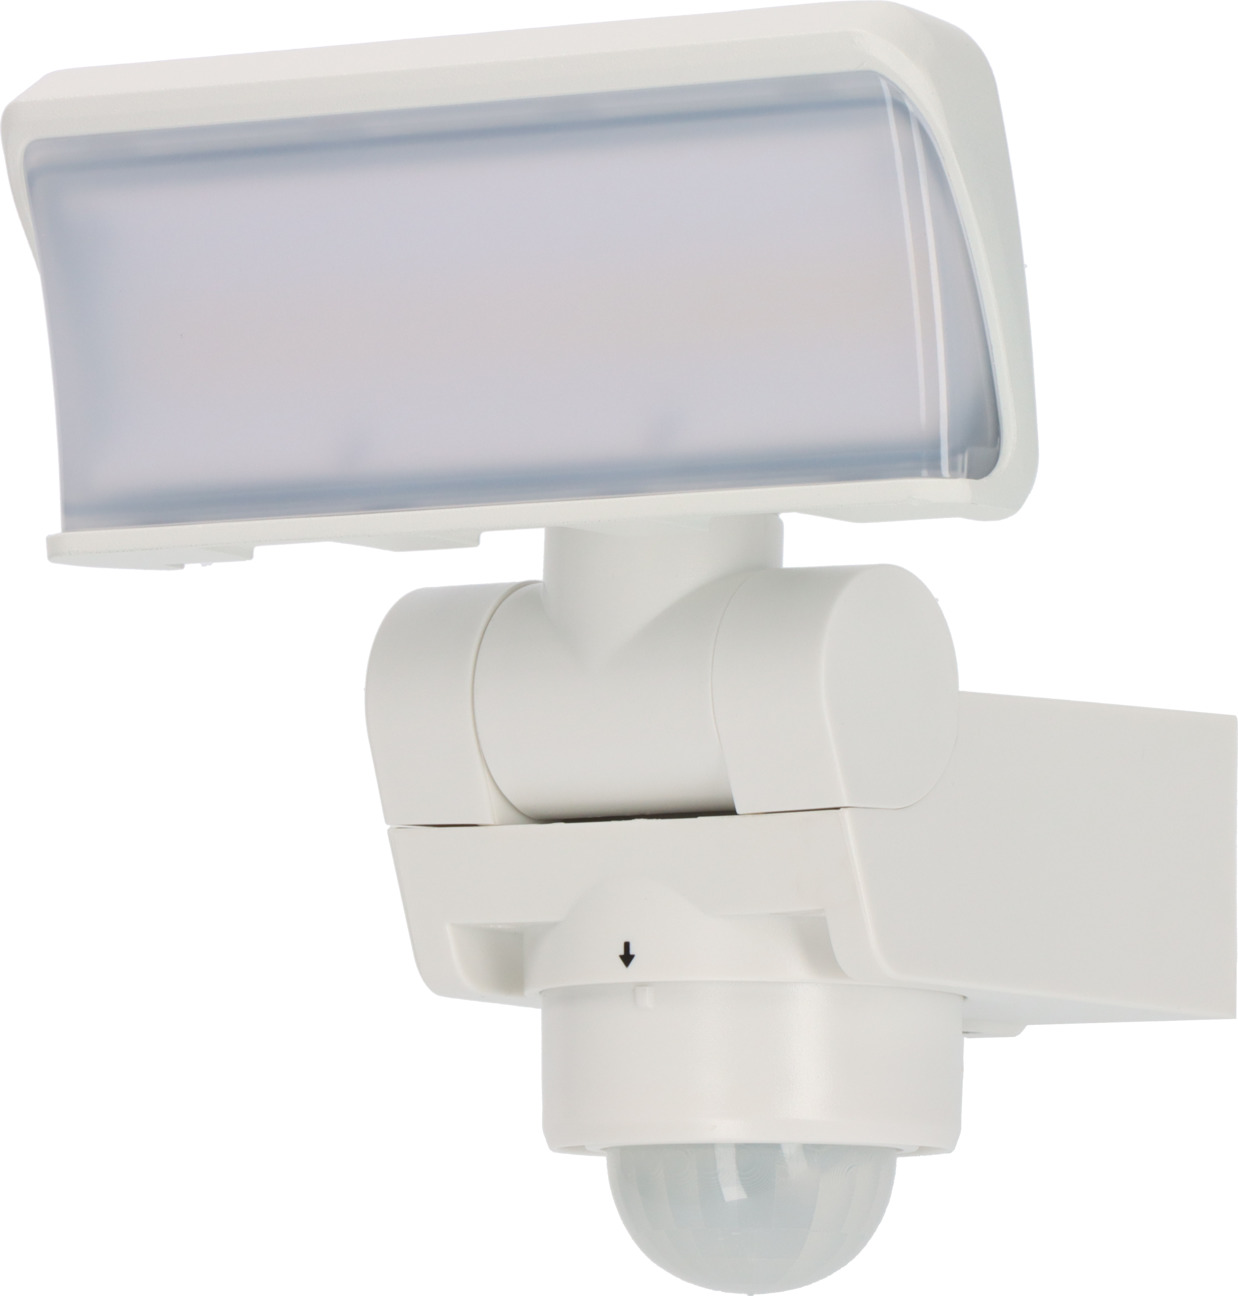 LED Strahler WS 2050 WP mit Bewegungsmelder, 1680lm, IP44, weiß |  brennenstuhl®